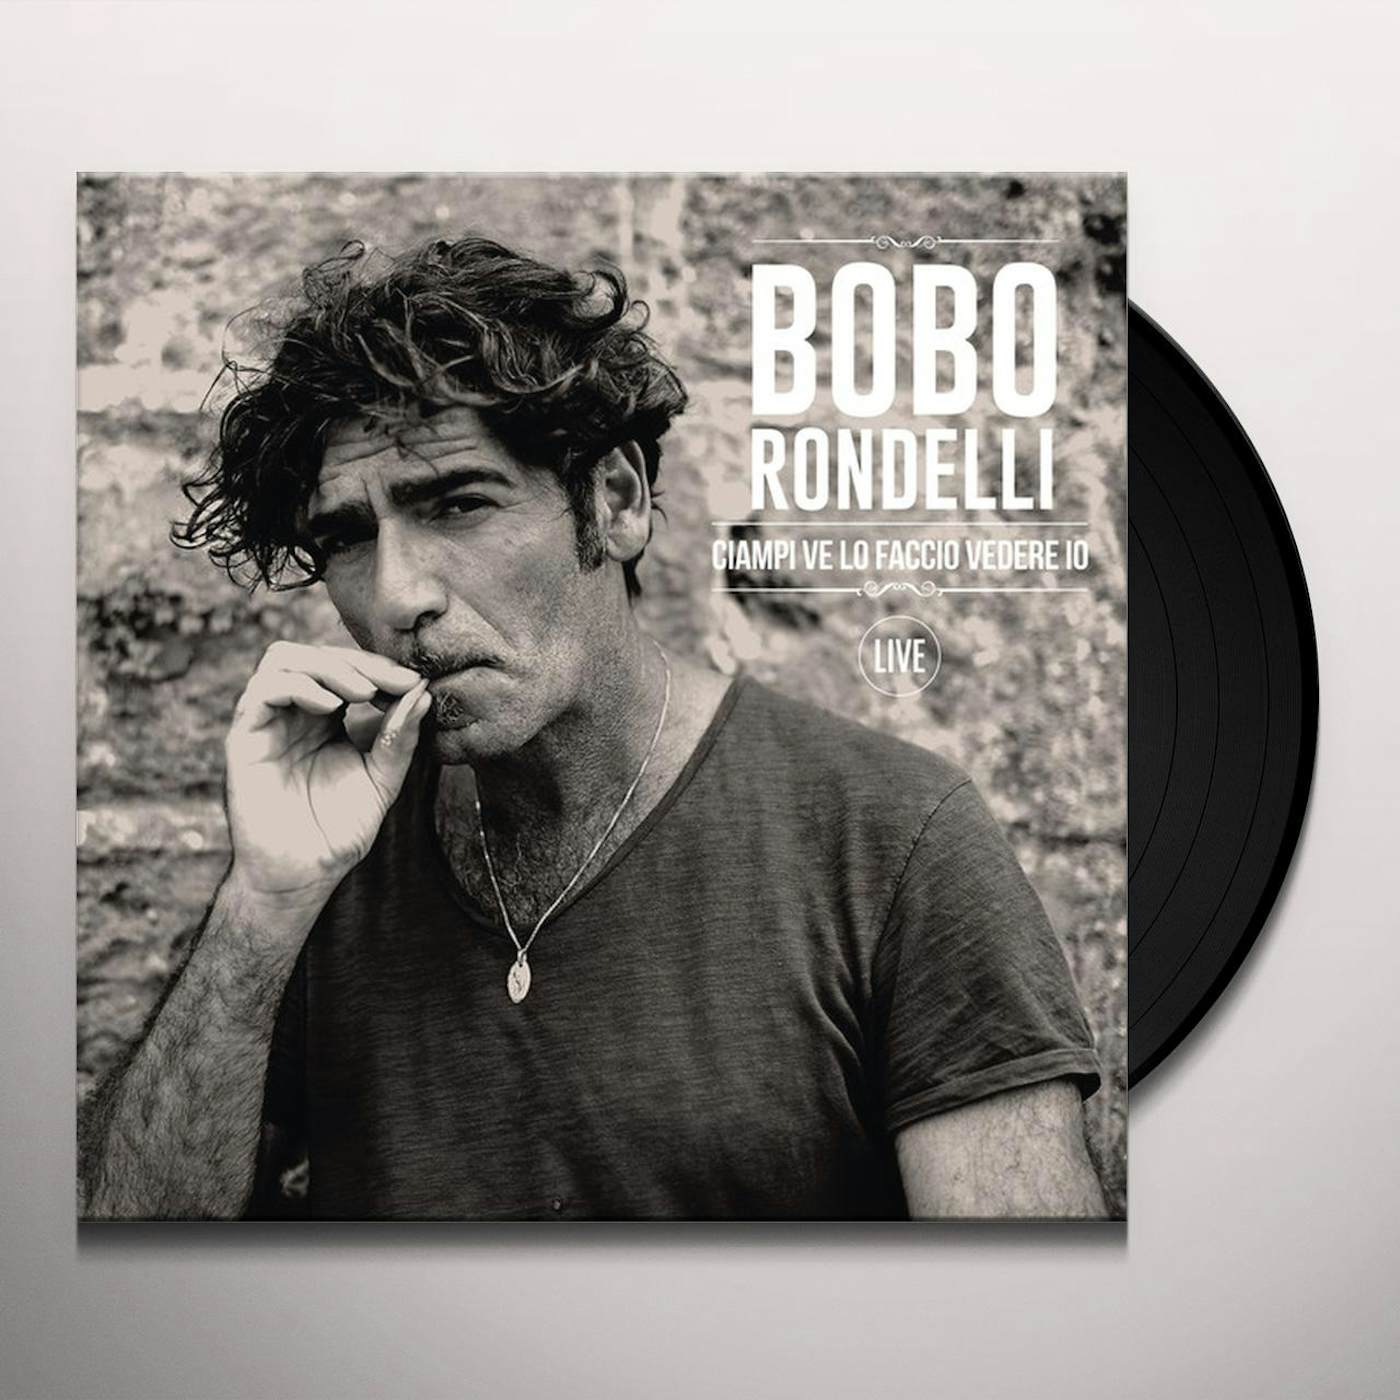 Bobo Rondelli CIAMPI VE LO FACCIO VEDERE IO (LIVE) Vinyl Record